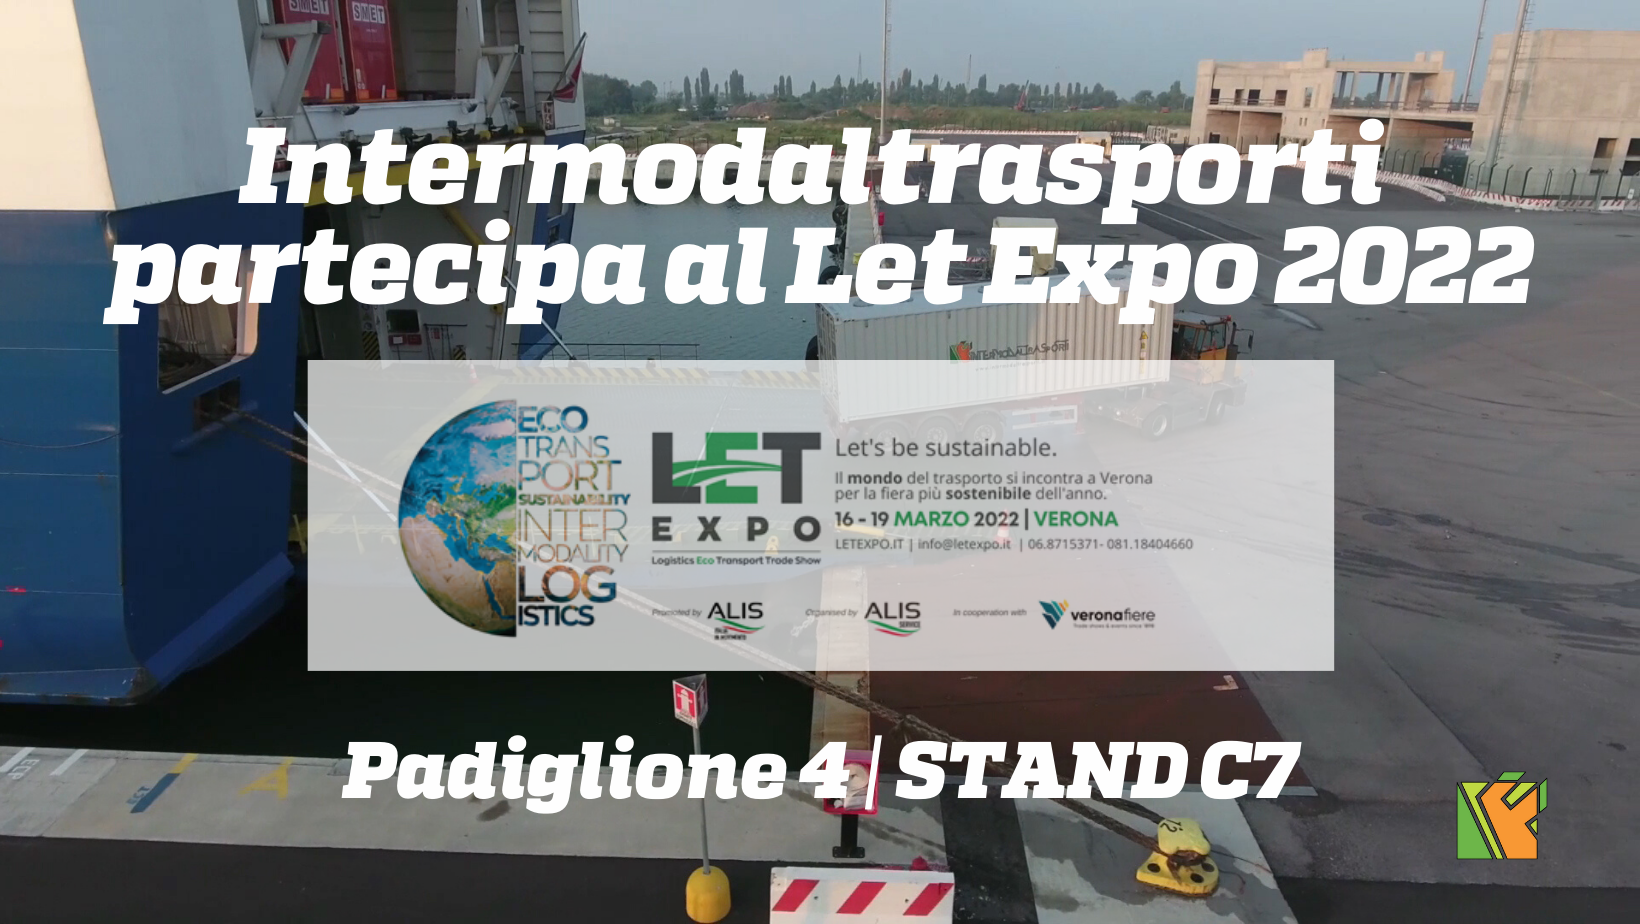 Intermodaltrasporti al Let Expo 